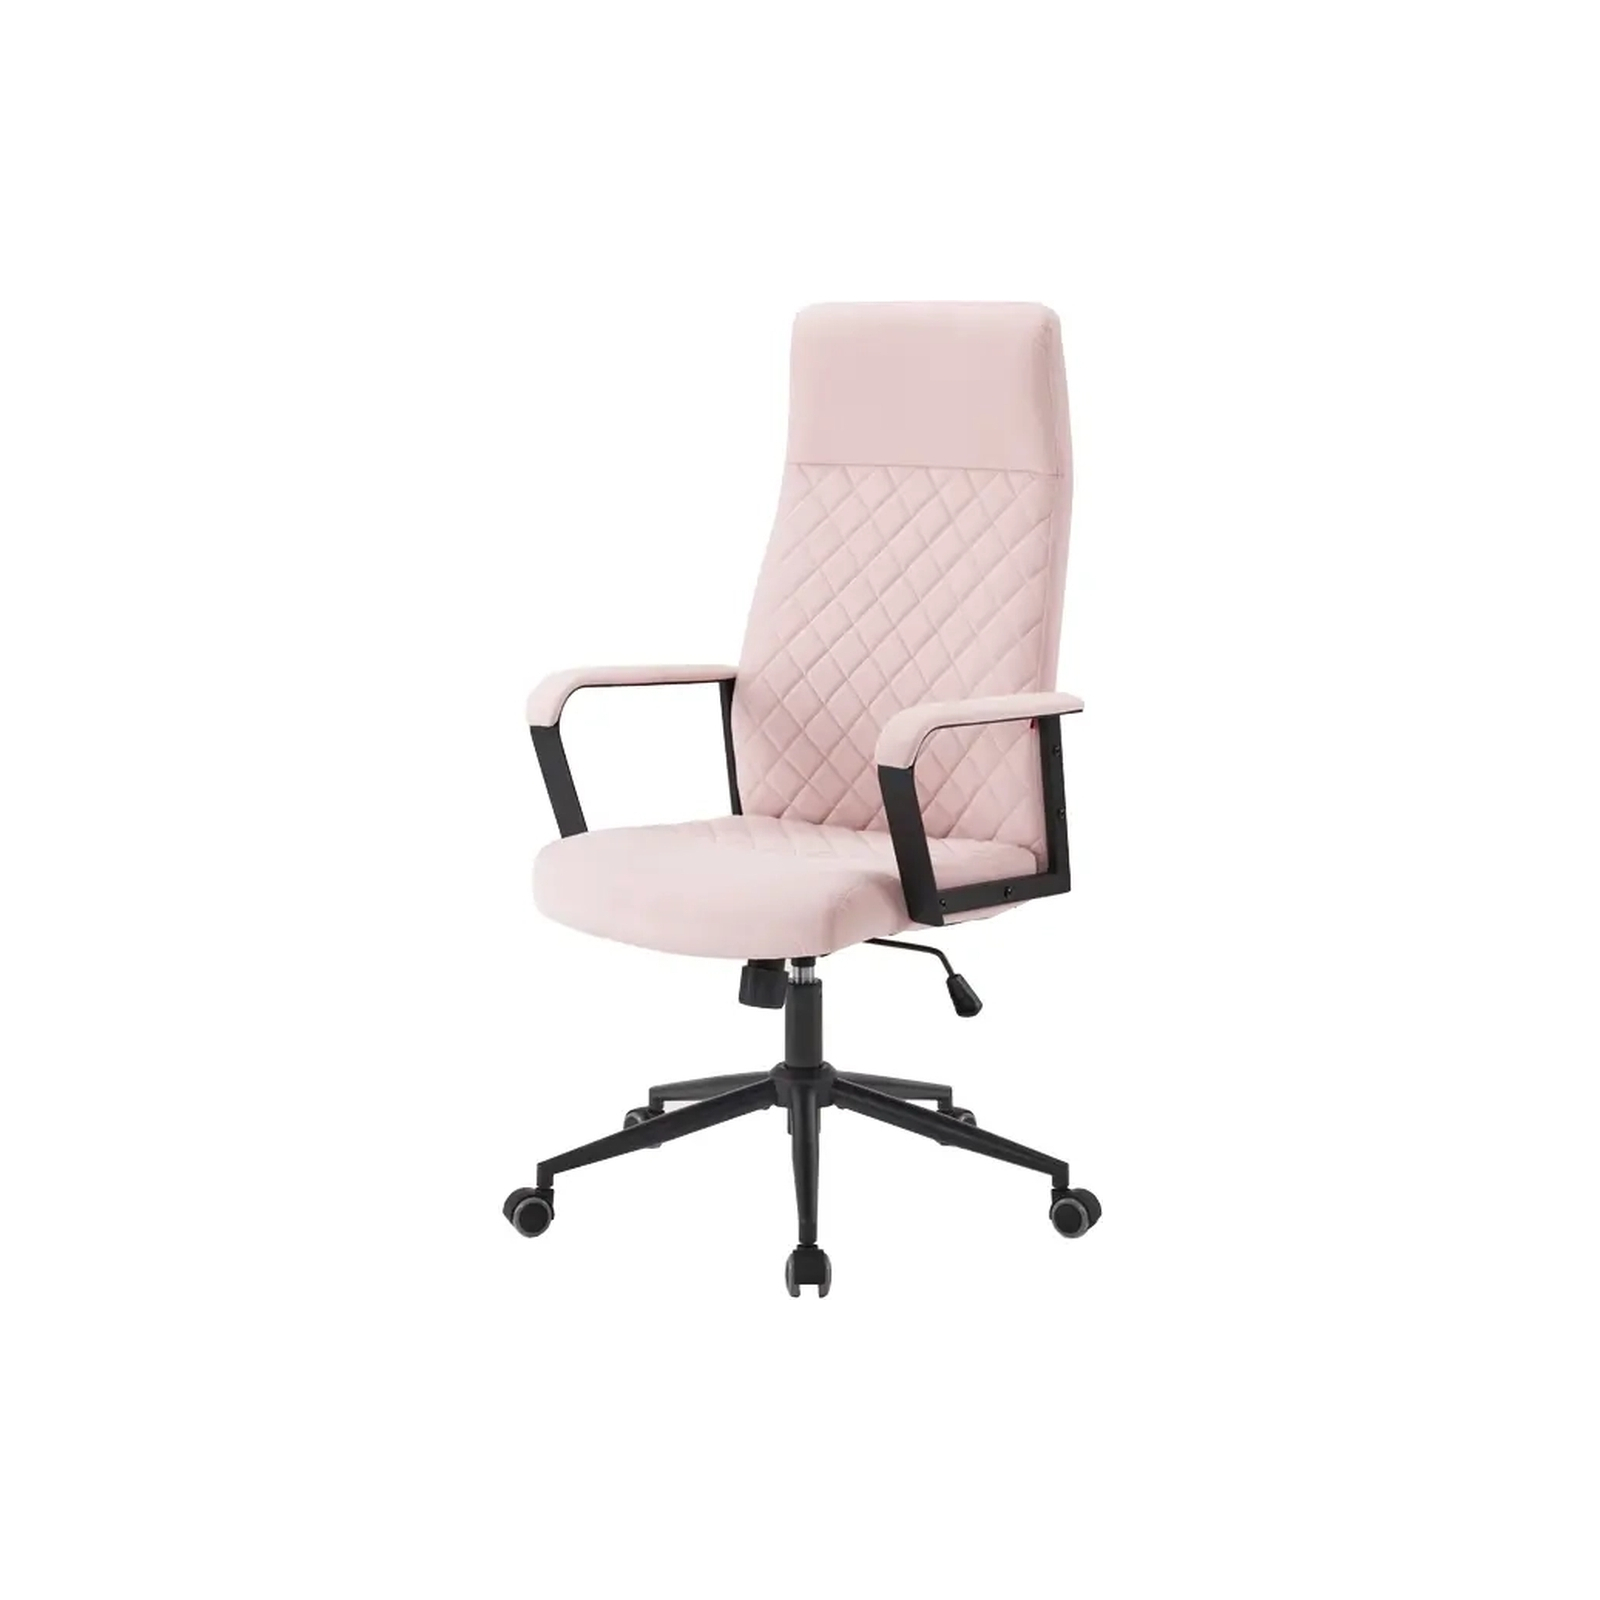 Офисное кресло Аклас Авис Розовый (00127046)